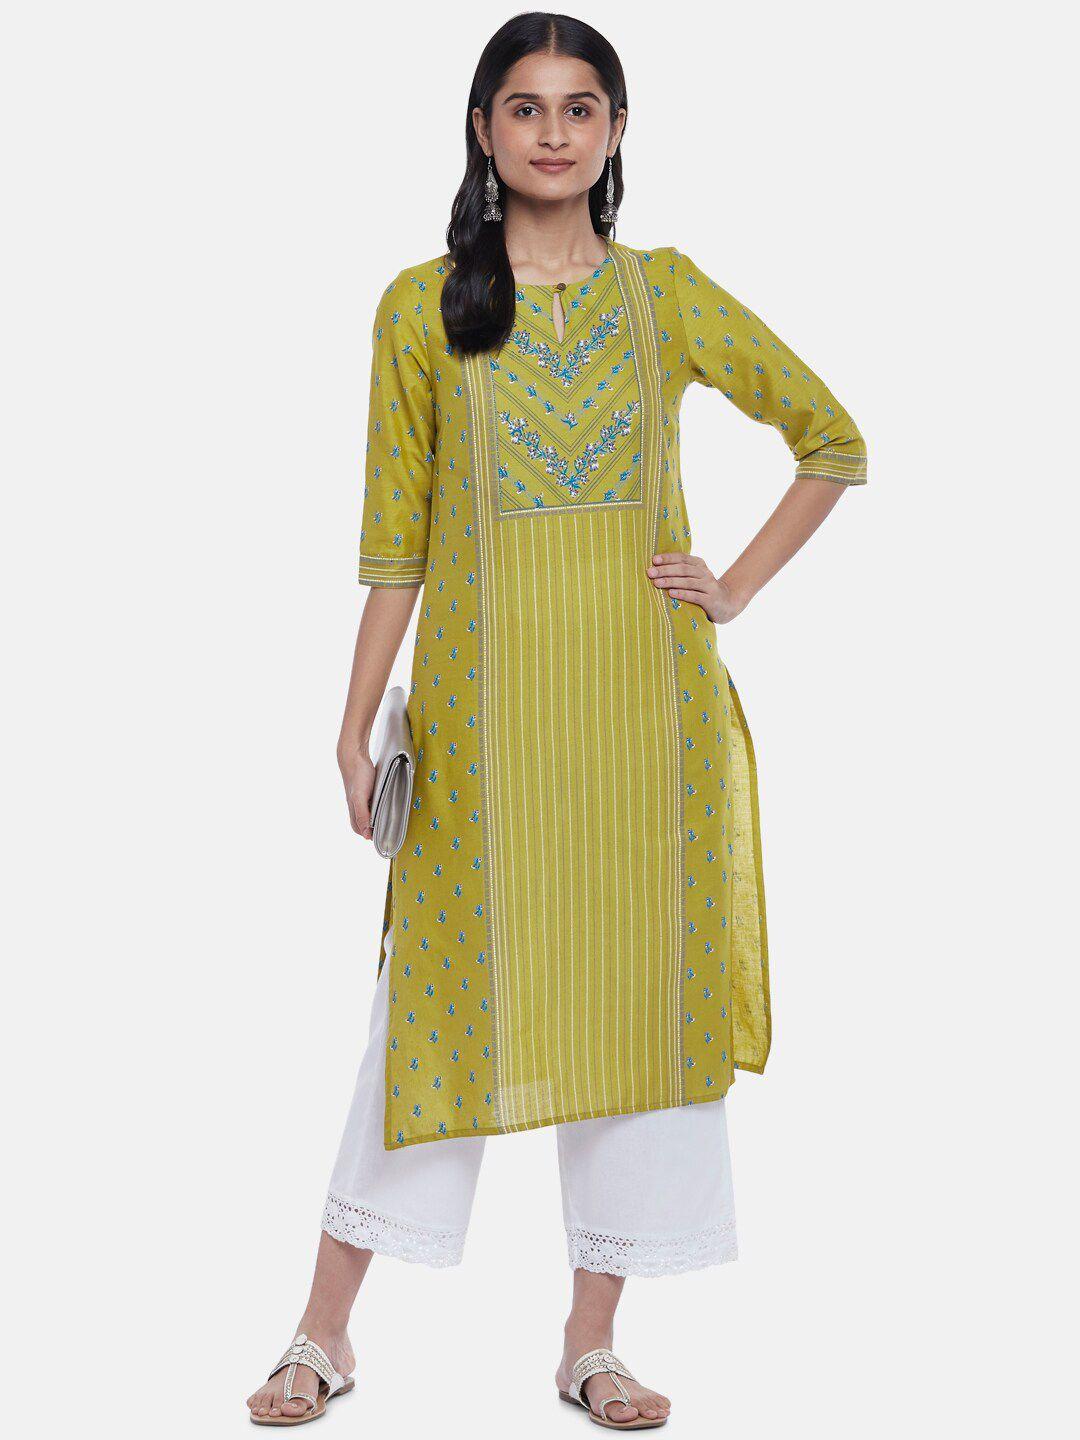 rangmanch by pantaloons women mustard yellow ethnic motifs striped keyhole neck kurta